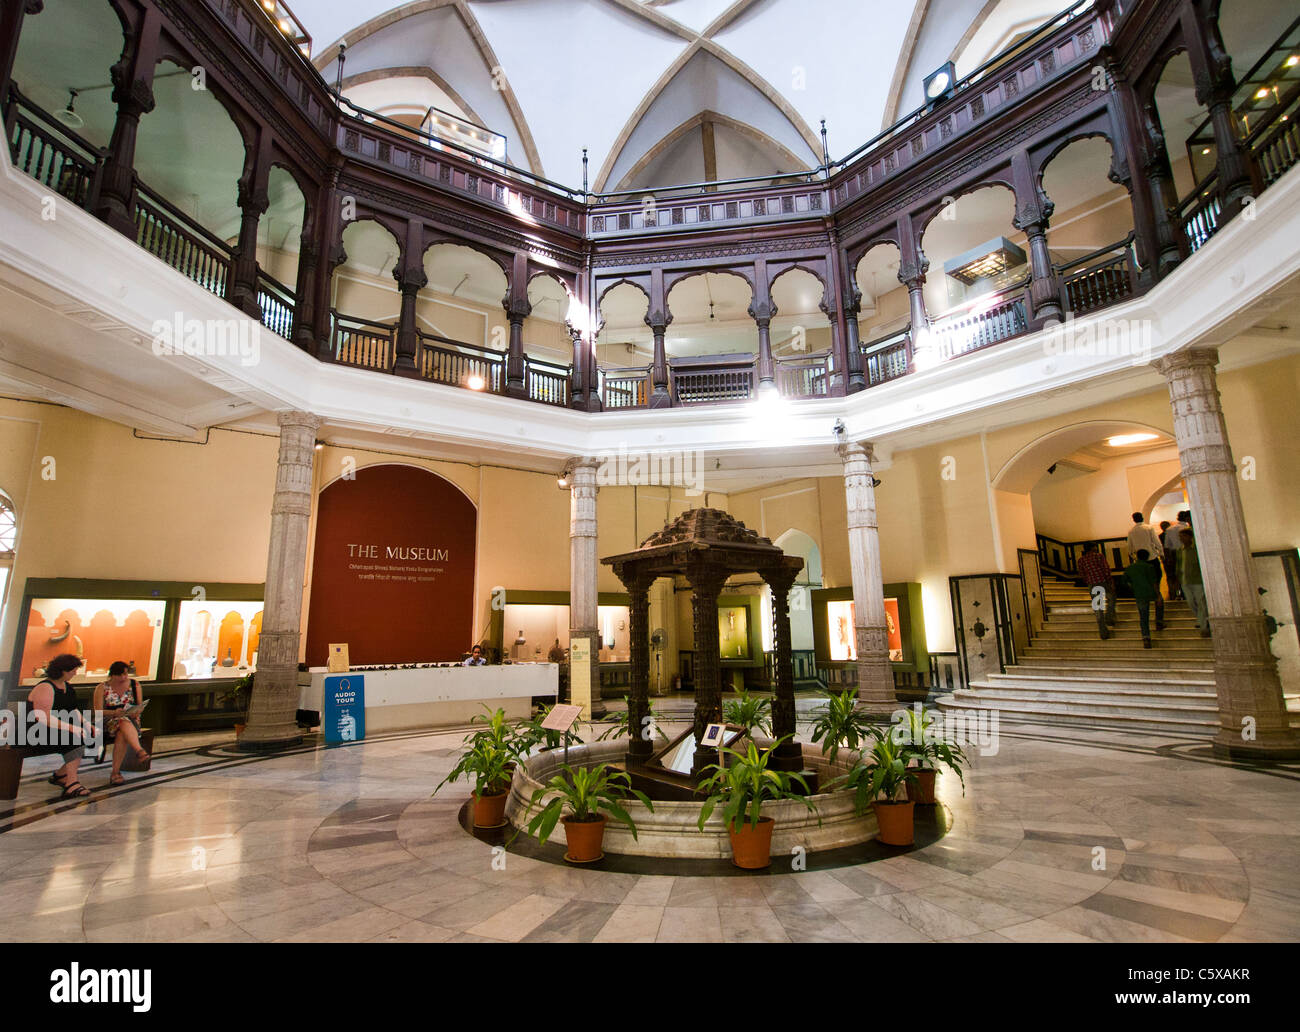 L'entrée principale de l'intérieur de la Gare Chhatrapati Shivaji Maharaj Vastu Sangrahalaya anciennement musée du Prince de Galles à Mumbai Inde Banque D'Images